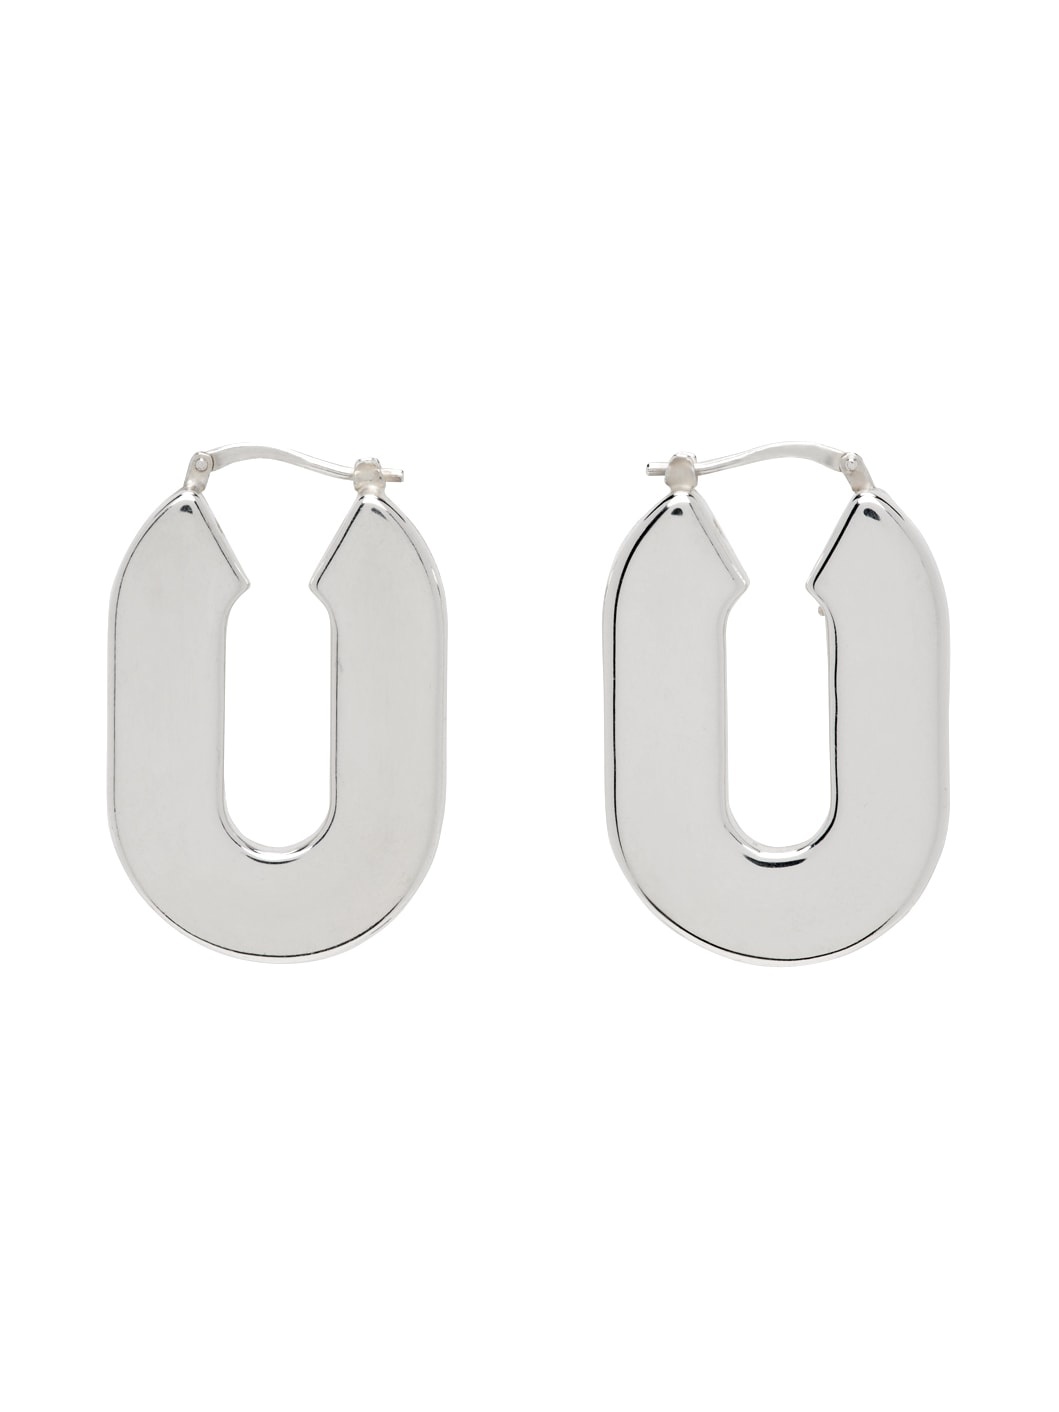 Silver BW3 Earrings - 1